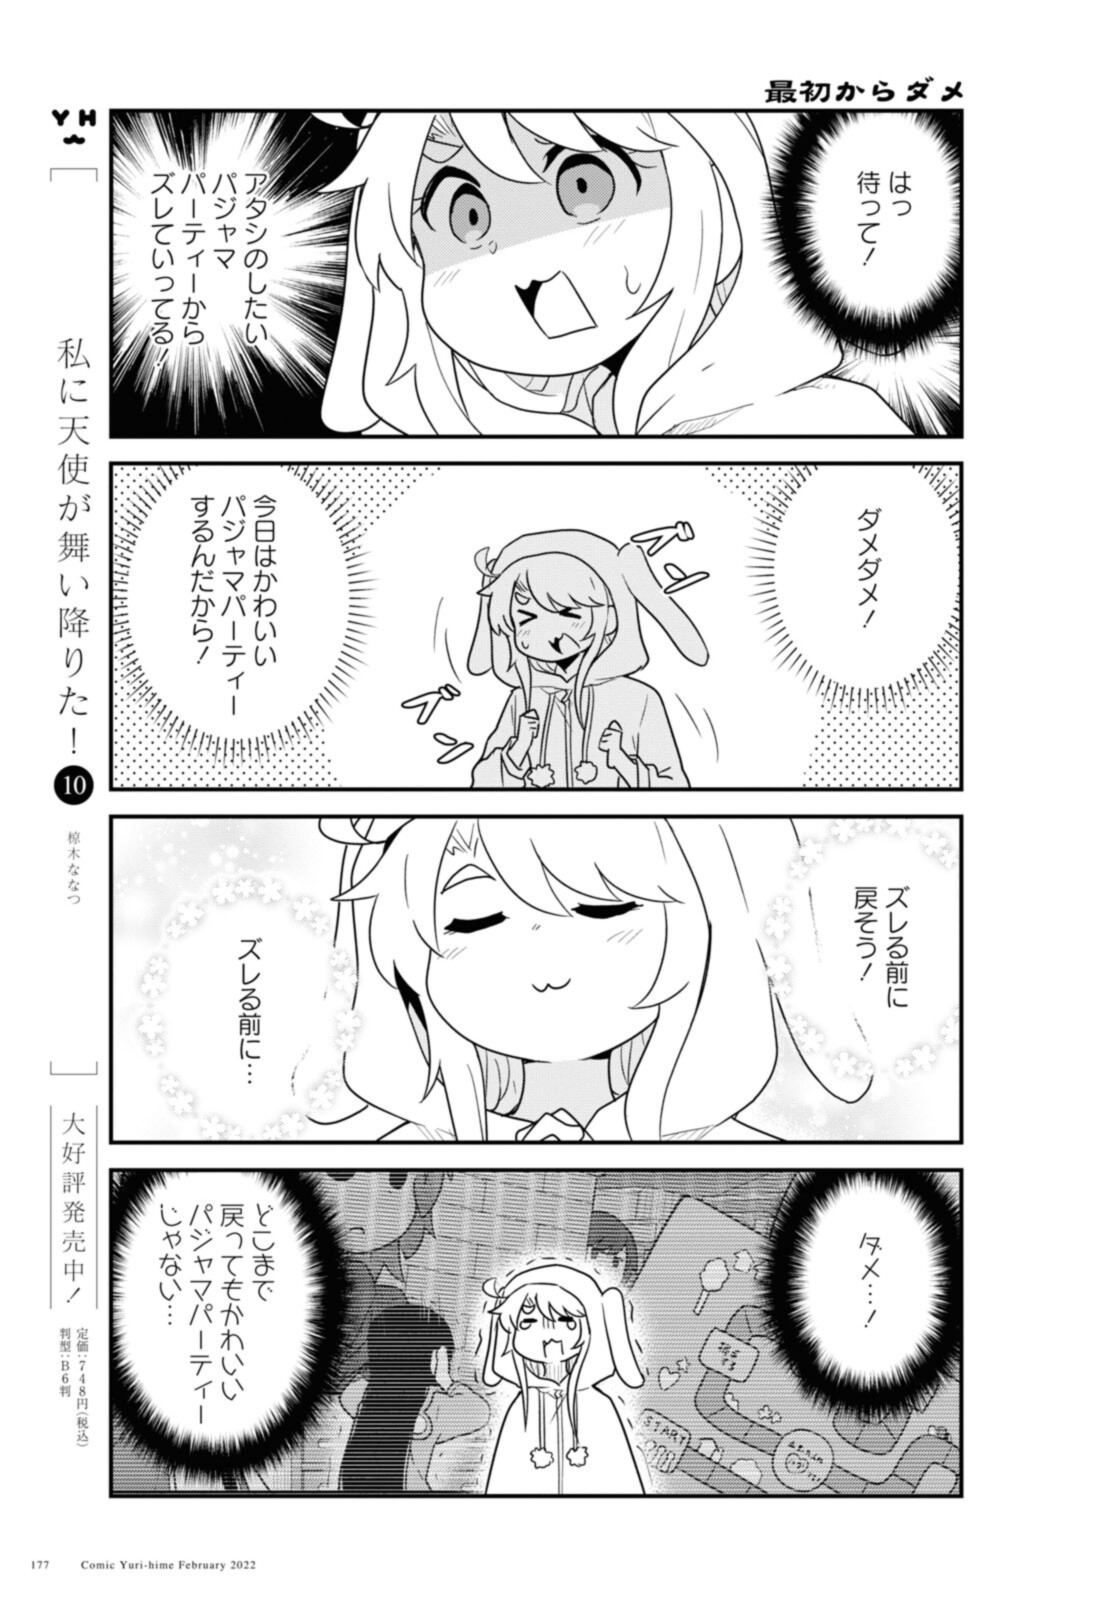 Watashi ni Tenshi ga Maiorita! - Chapter 92 - Page 13